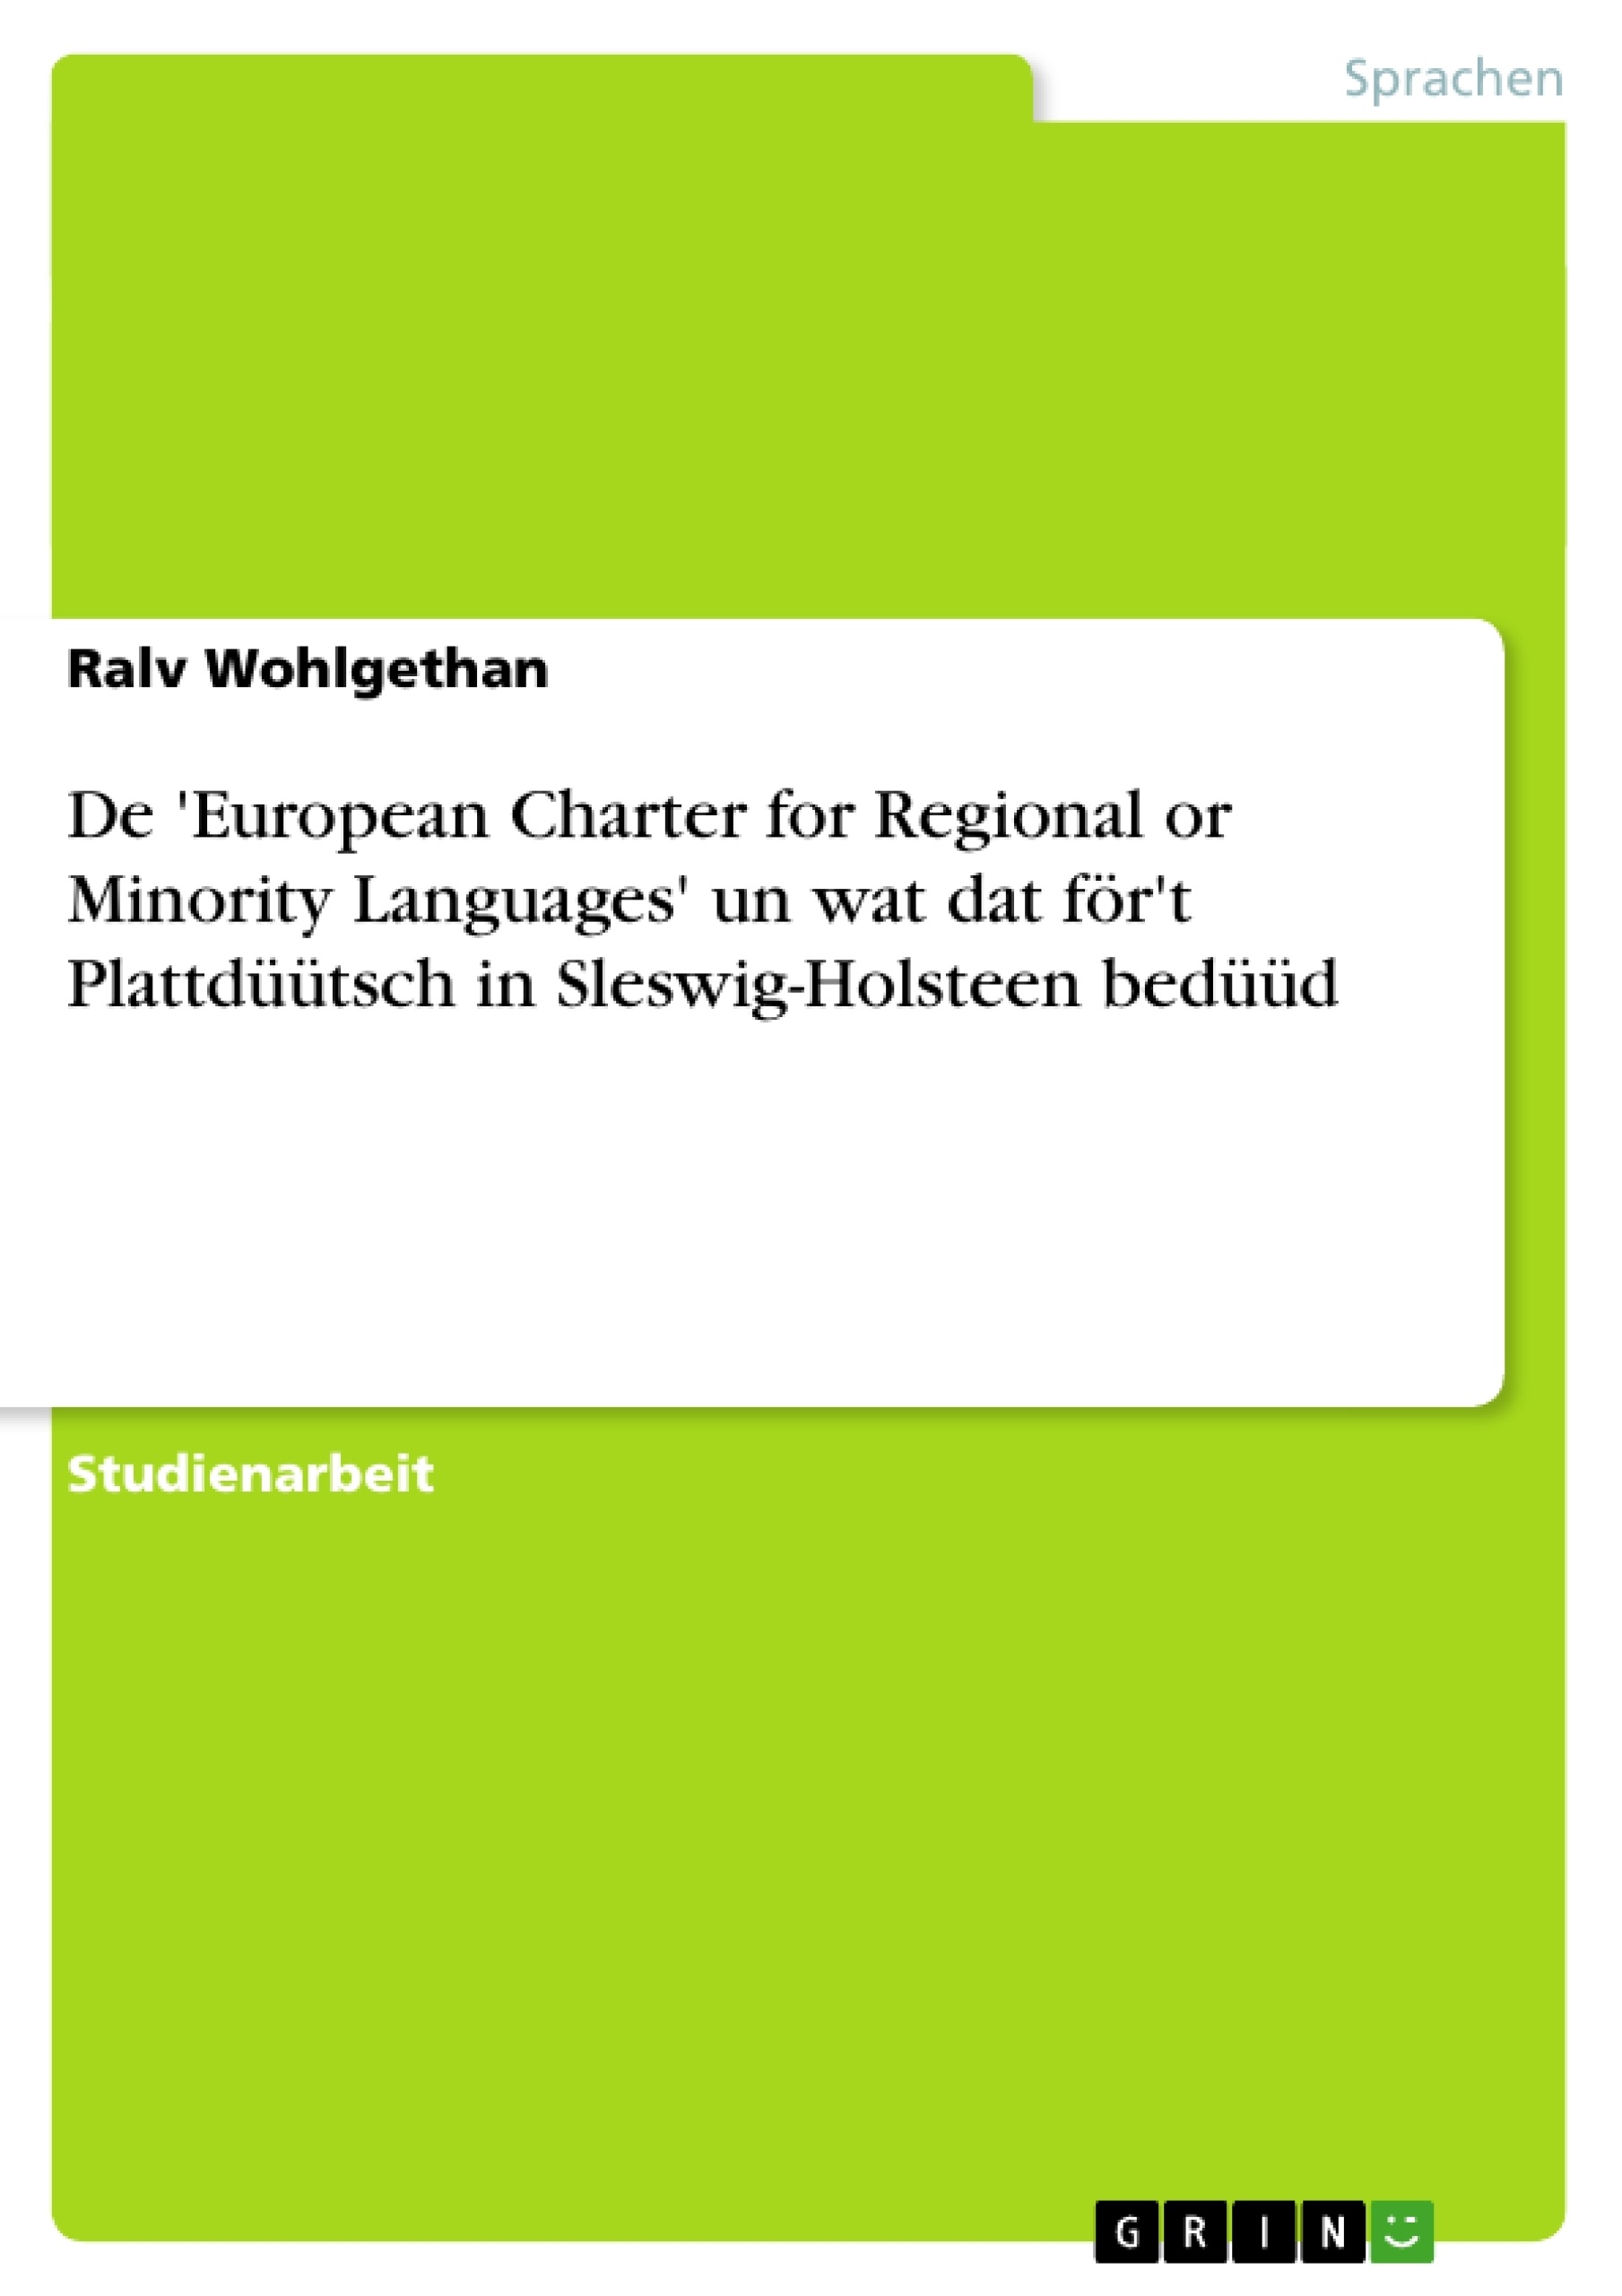 Title: De 'European Charter for Regional or Minority Languages' un wat dat för't Plattdüütsch in Sleswig-Holsteen bedüüd